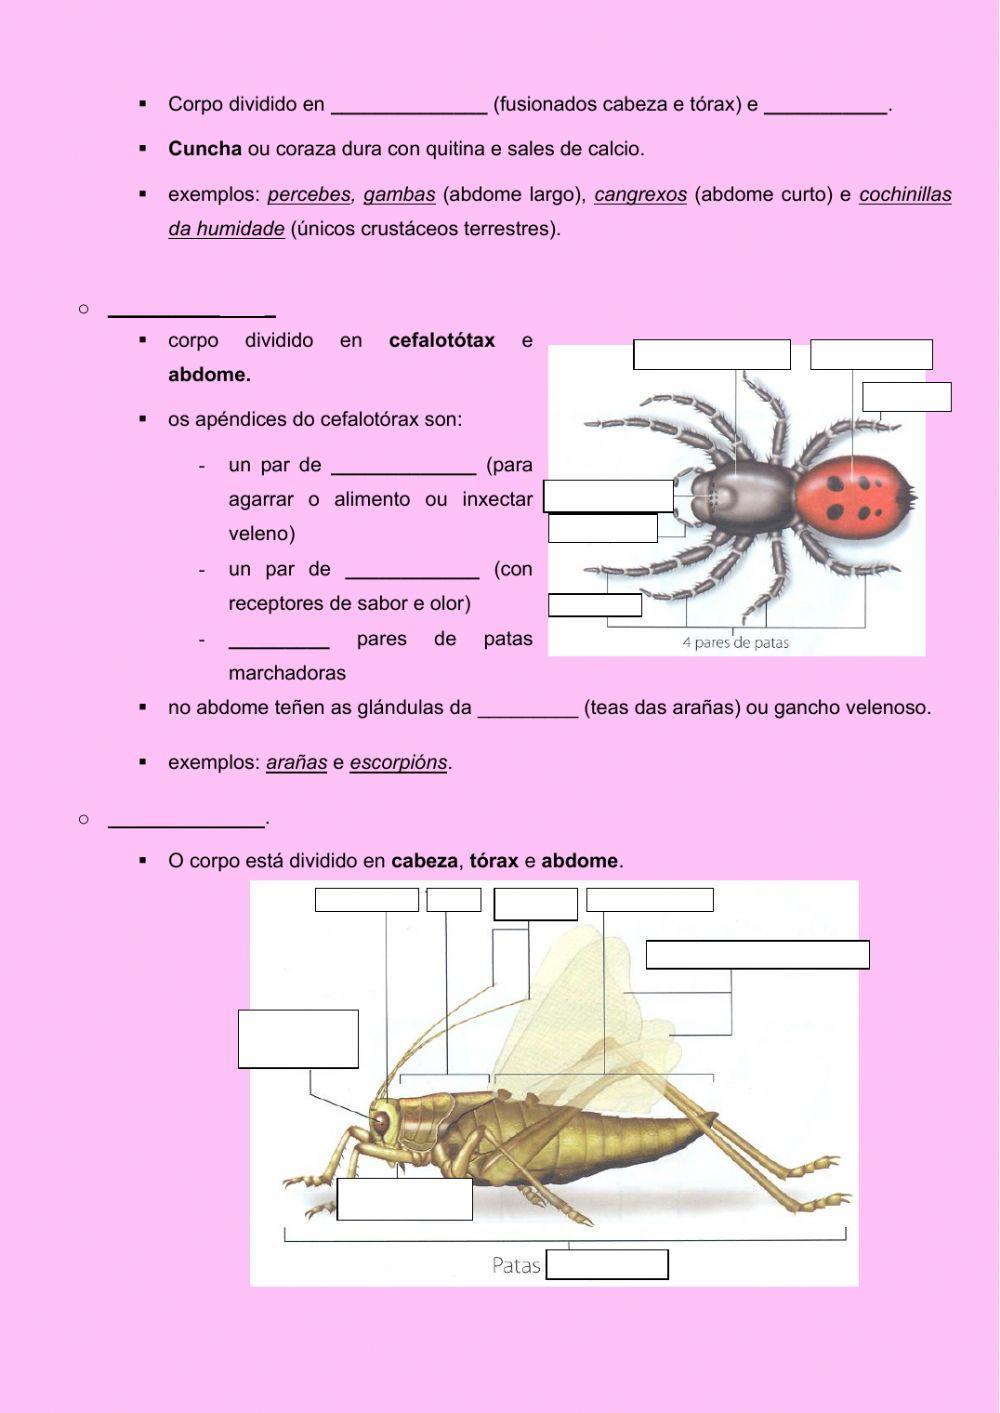 Invertebrados: artrópodos e equinodermos